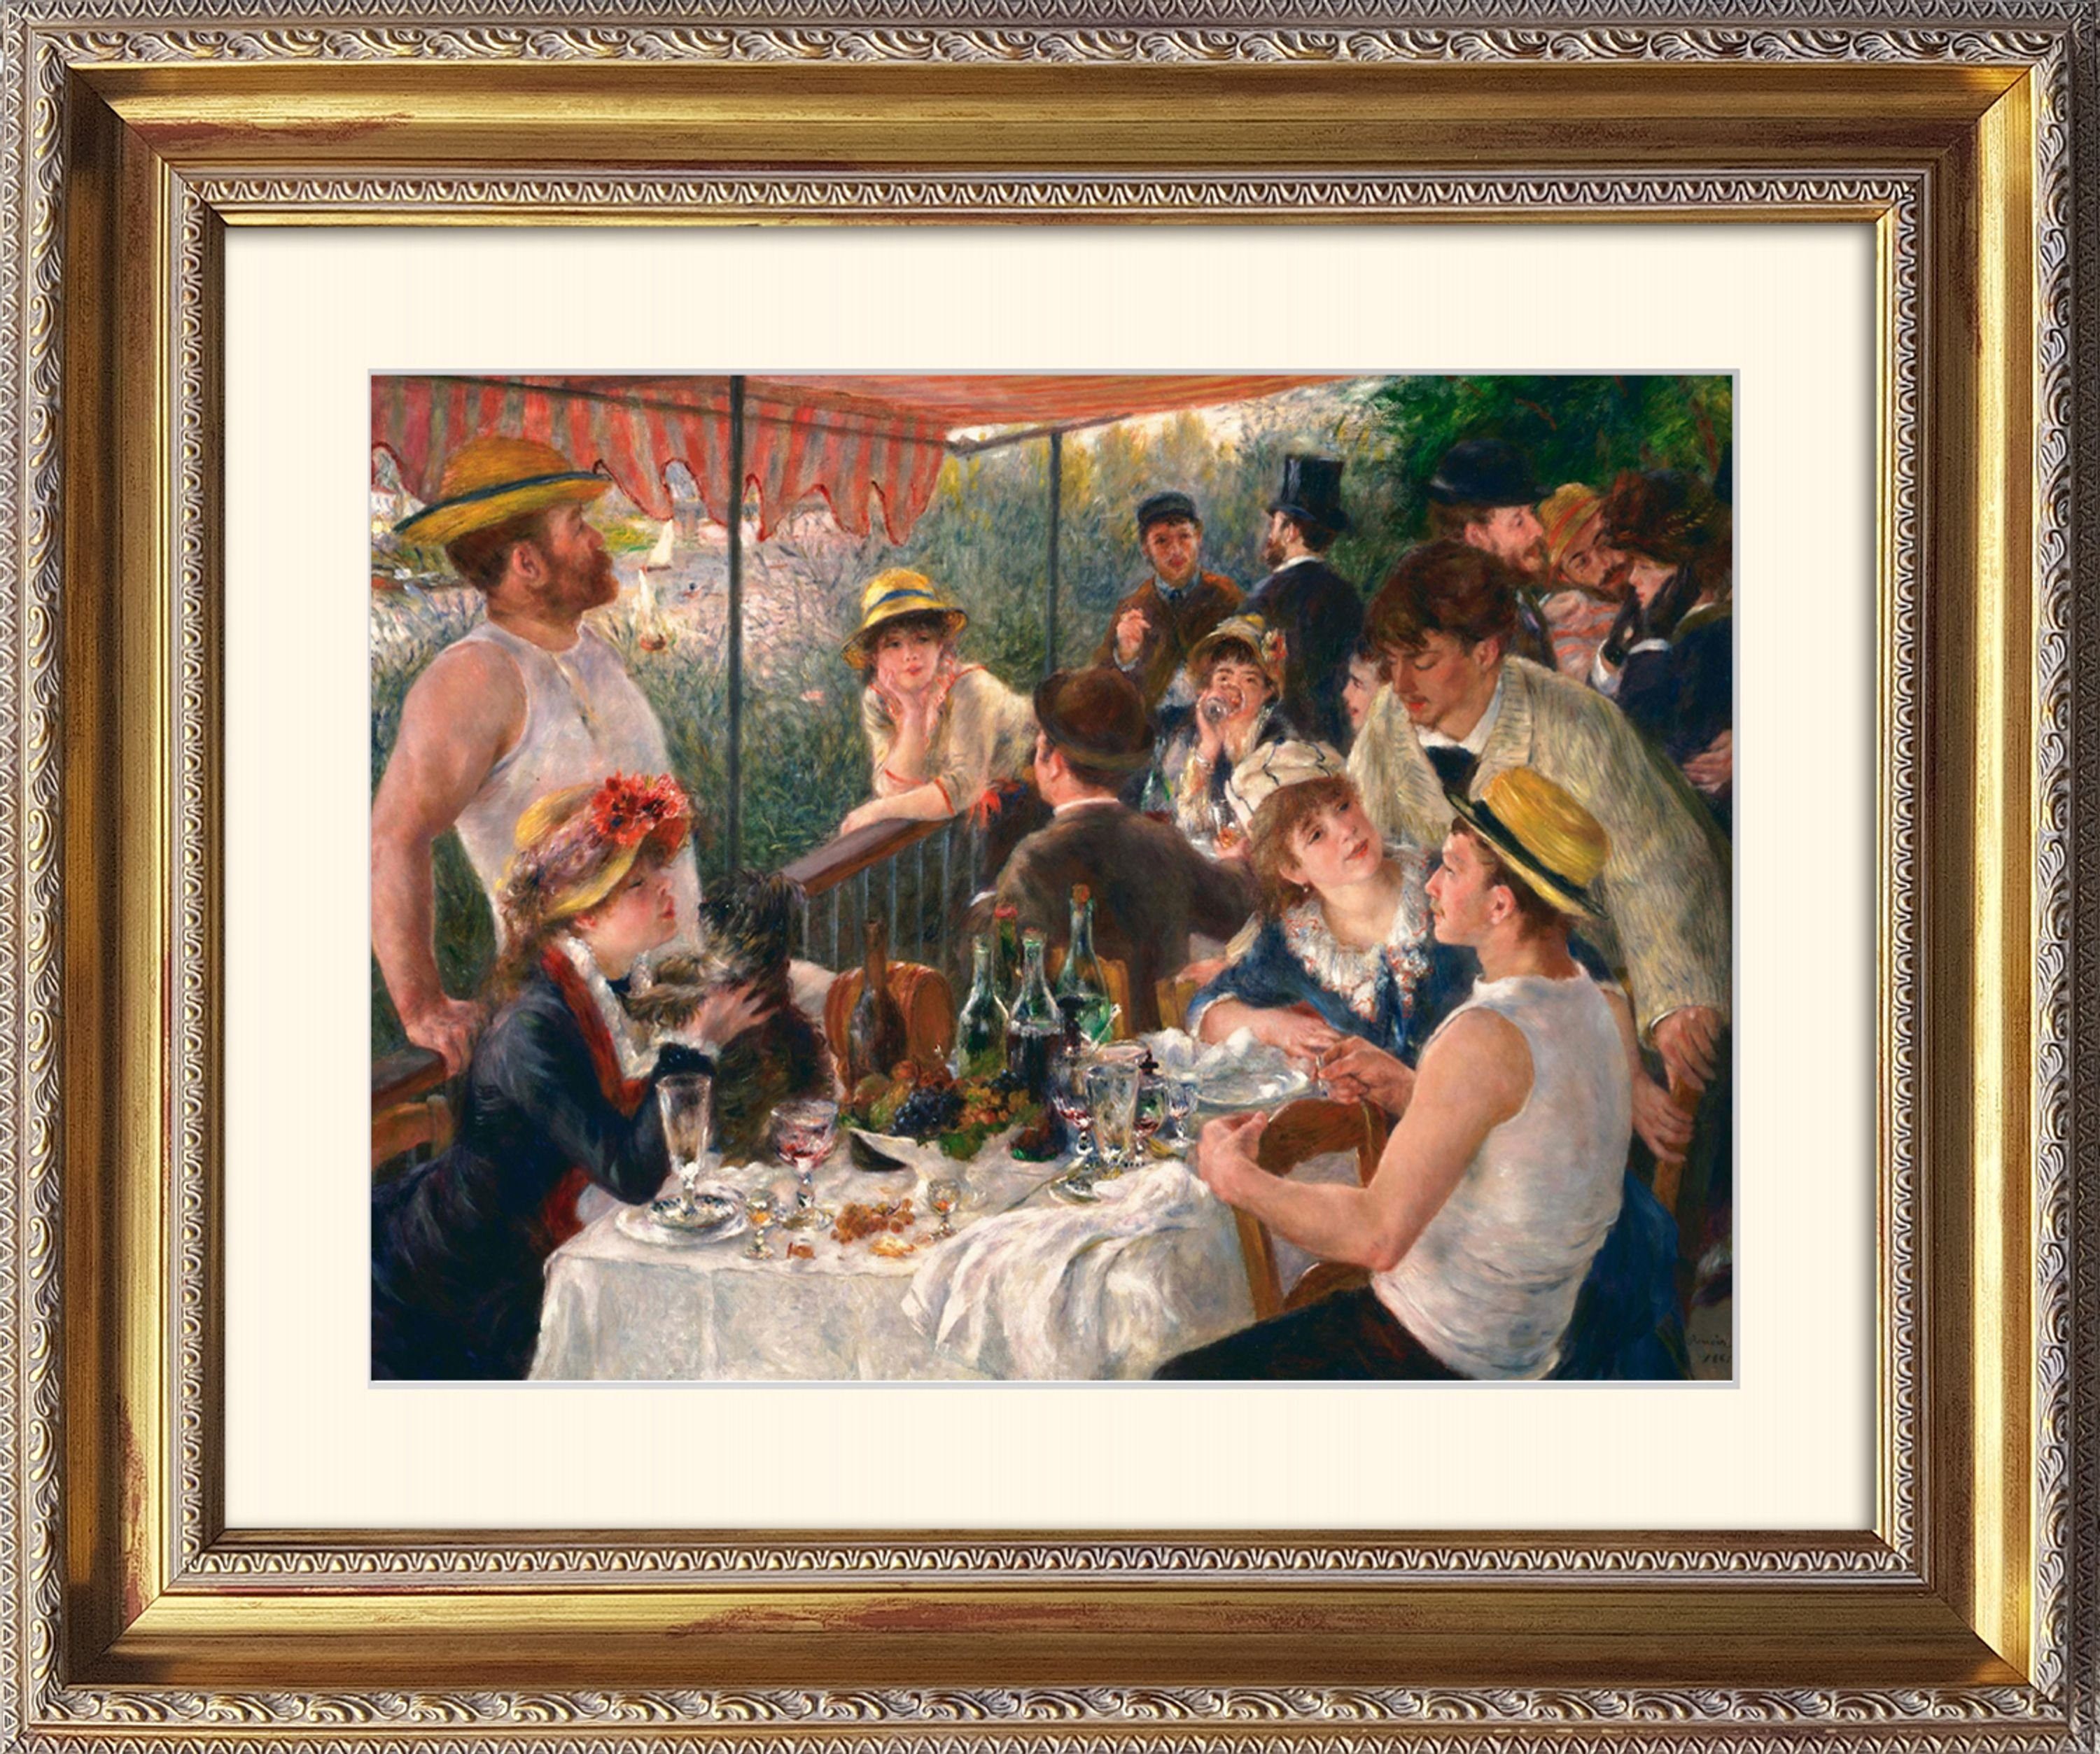 Frühstück Party Bild August mit of Poster artissimo Ruderer : Bild / on Lunche Barock-Rahmen the / der Wandbild, Rahmen erahmt Renoir / Das mit Renoir 63x53cm Boating